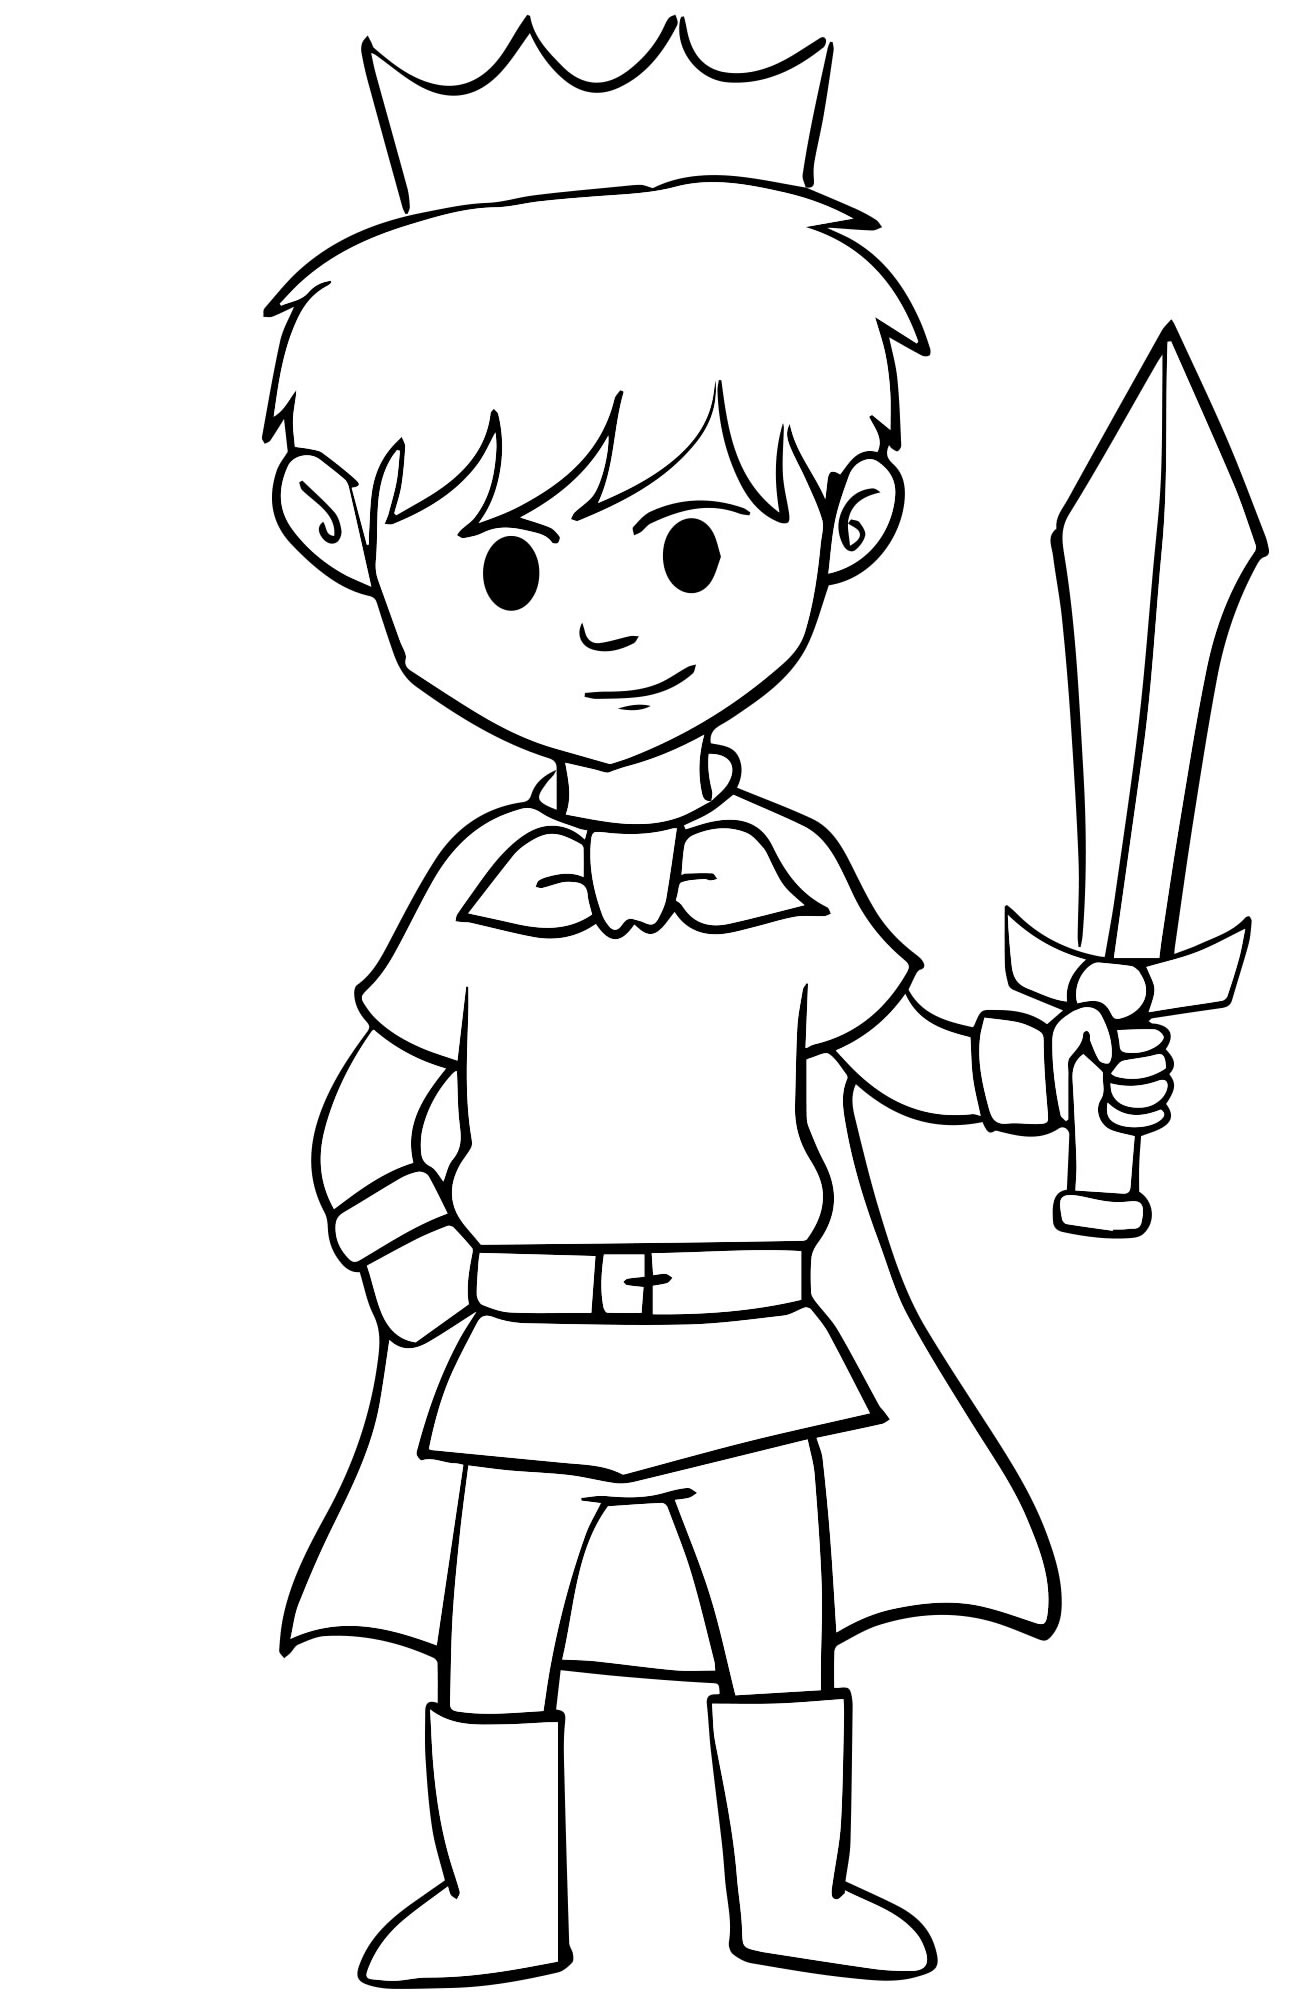 Принц с мечом раскраска для детей